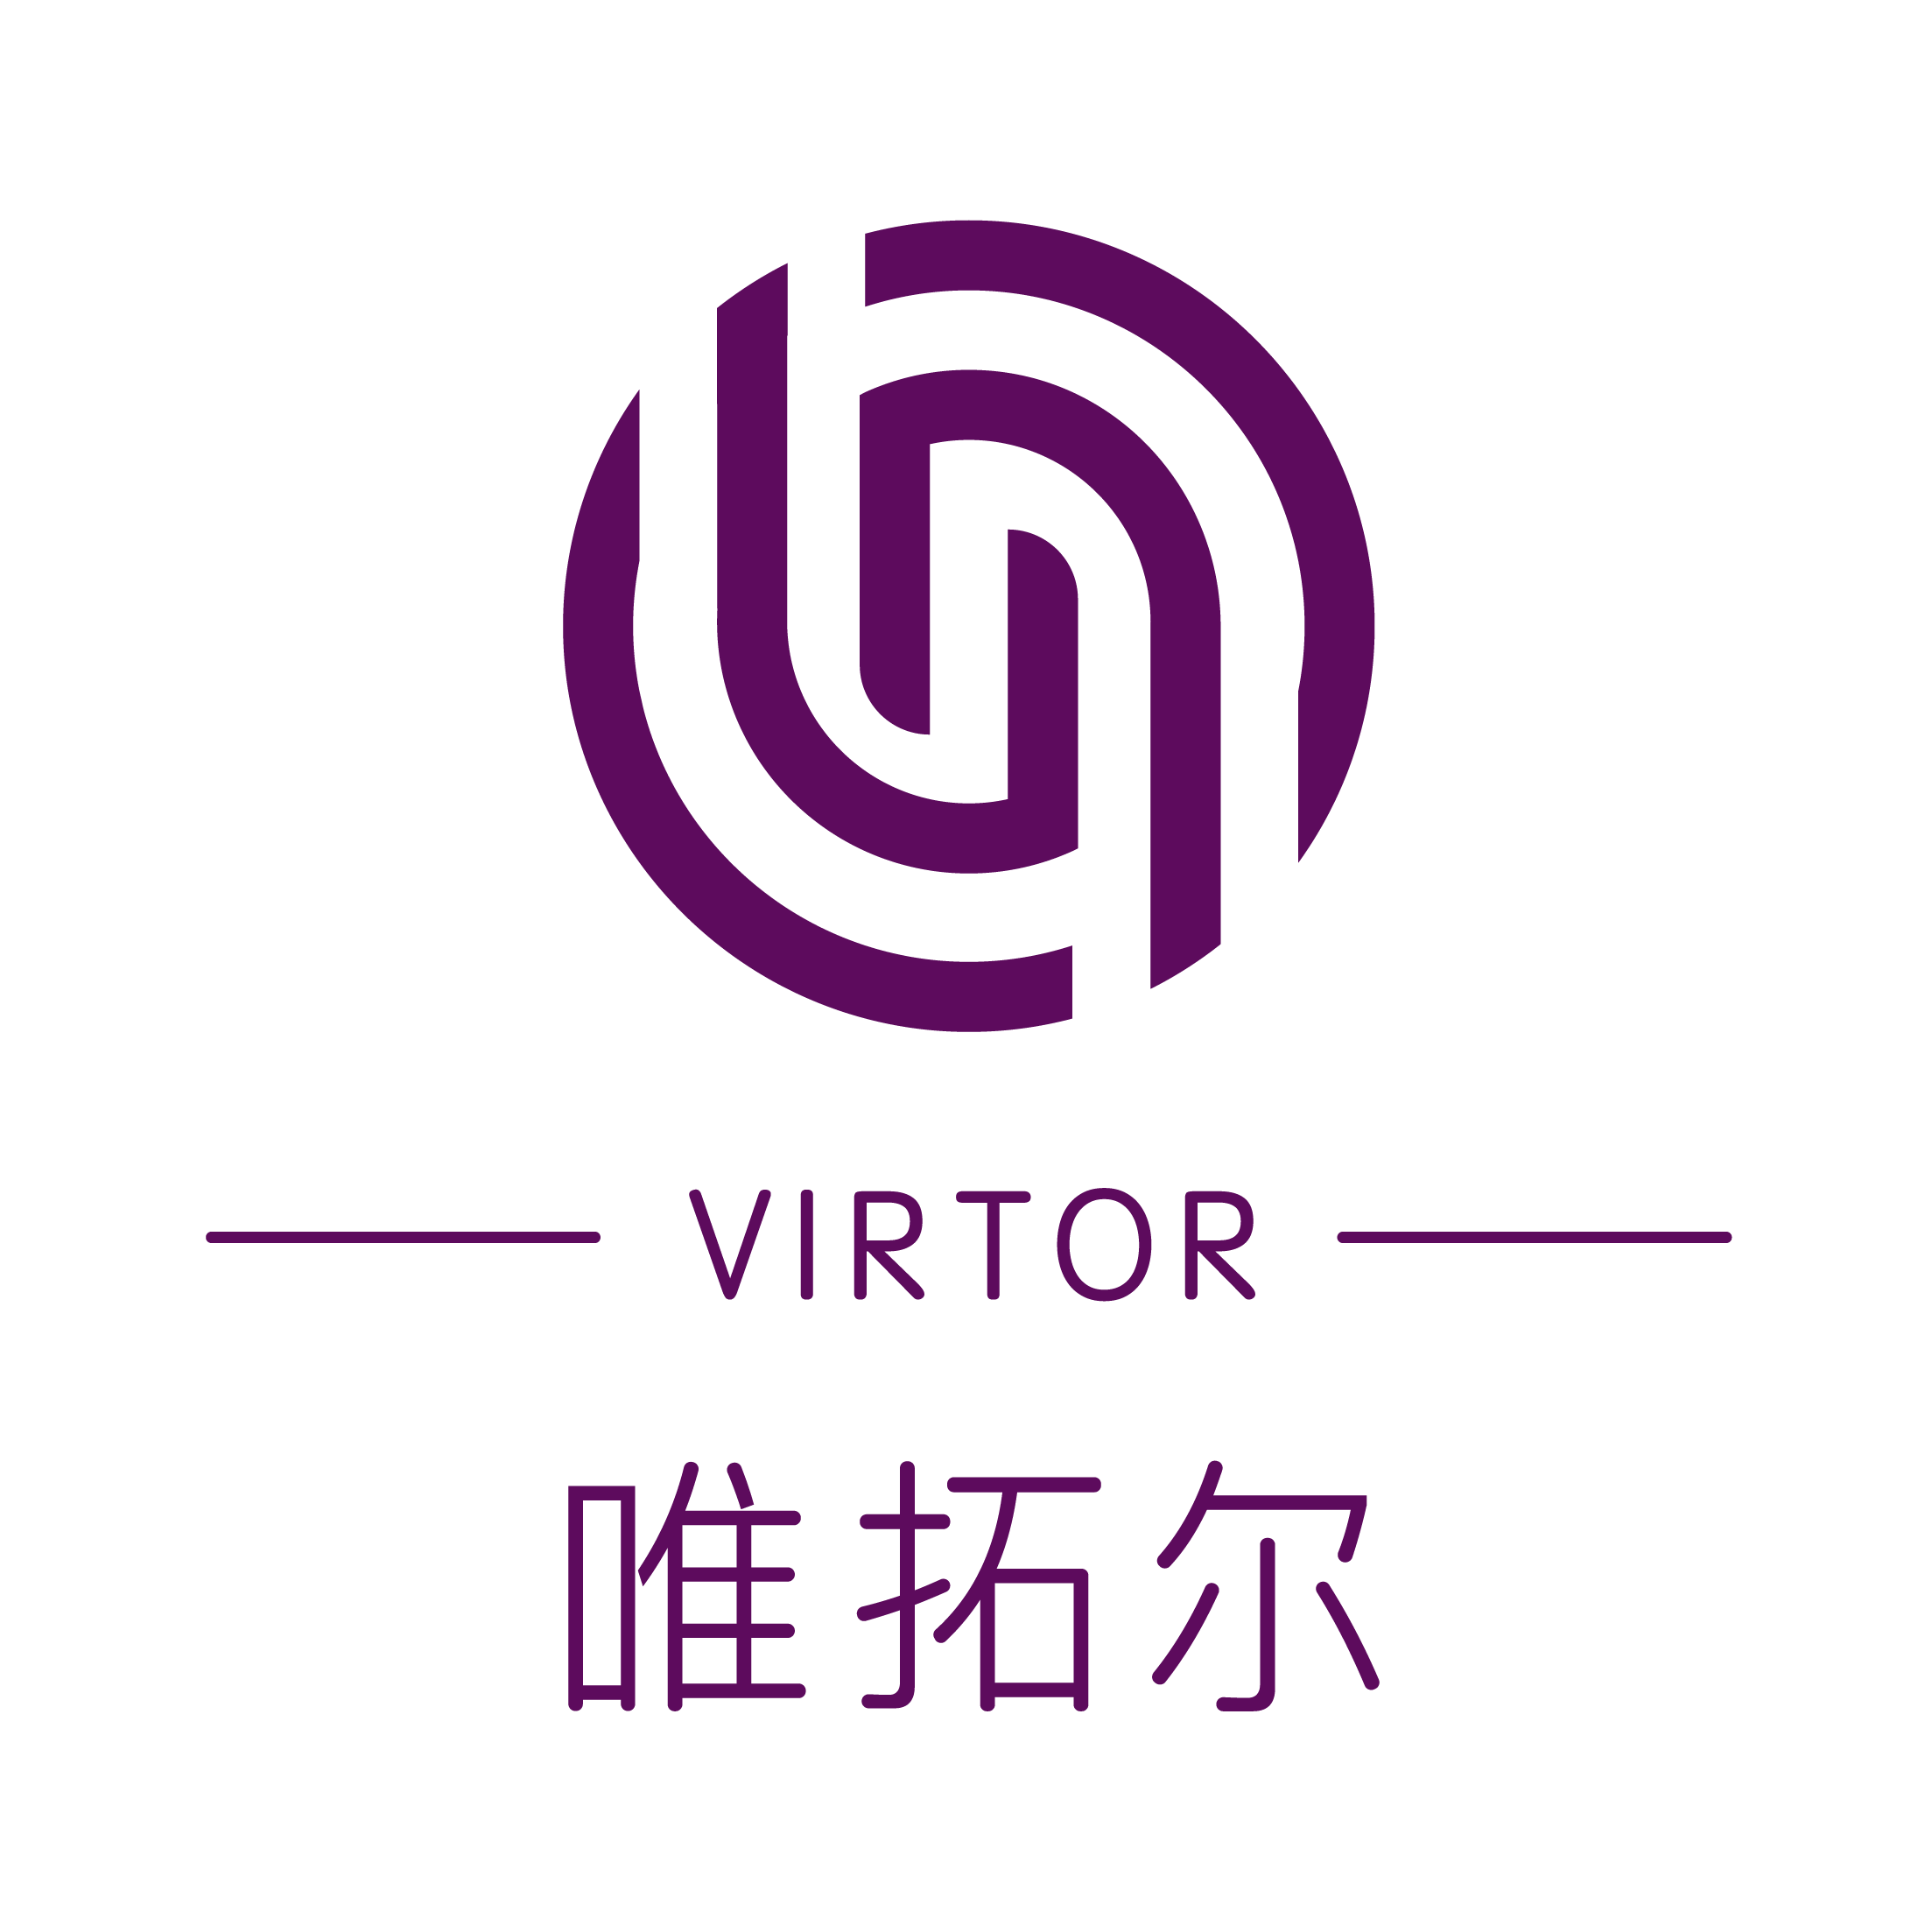 Virtor Ecological Agricultural Co.Ltd.